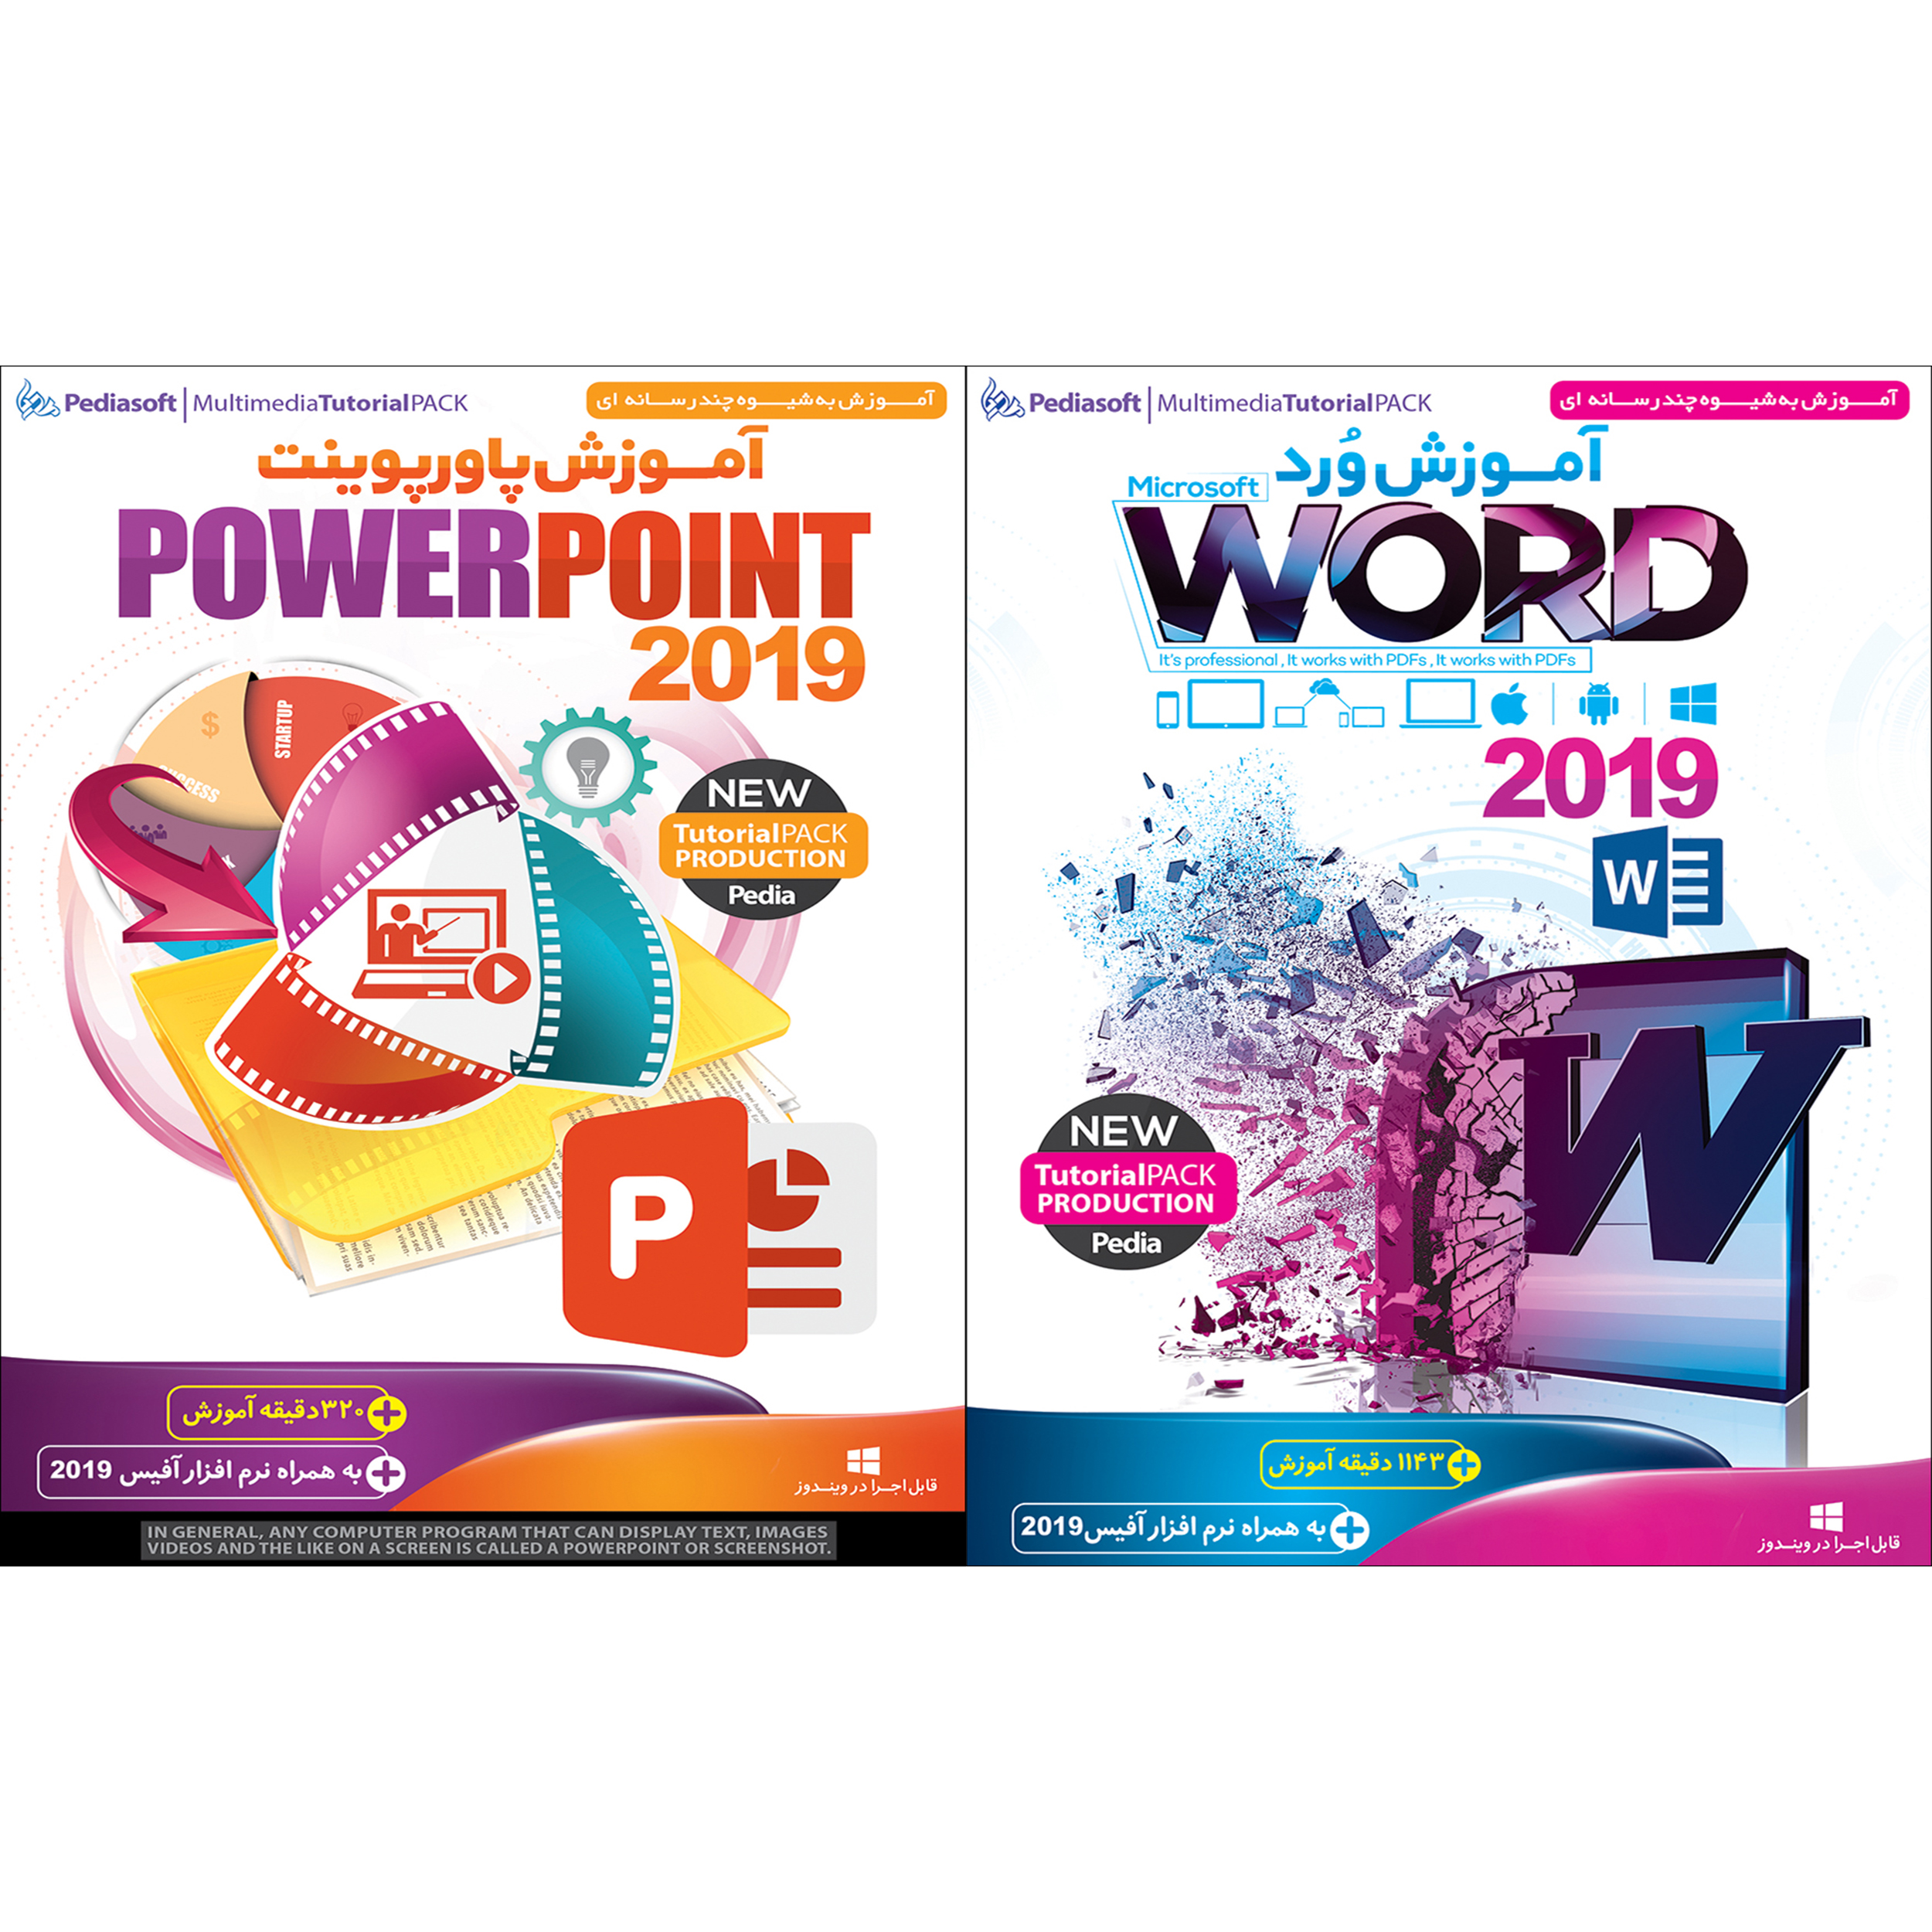 نرم افزار آموزش ورد Word 2019 نشر پدیا سافت به همراه نرم افزار آموزش پاورپوینت Powerpoint 2019 نشر پدیا سافت